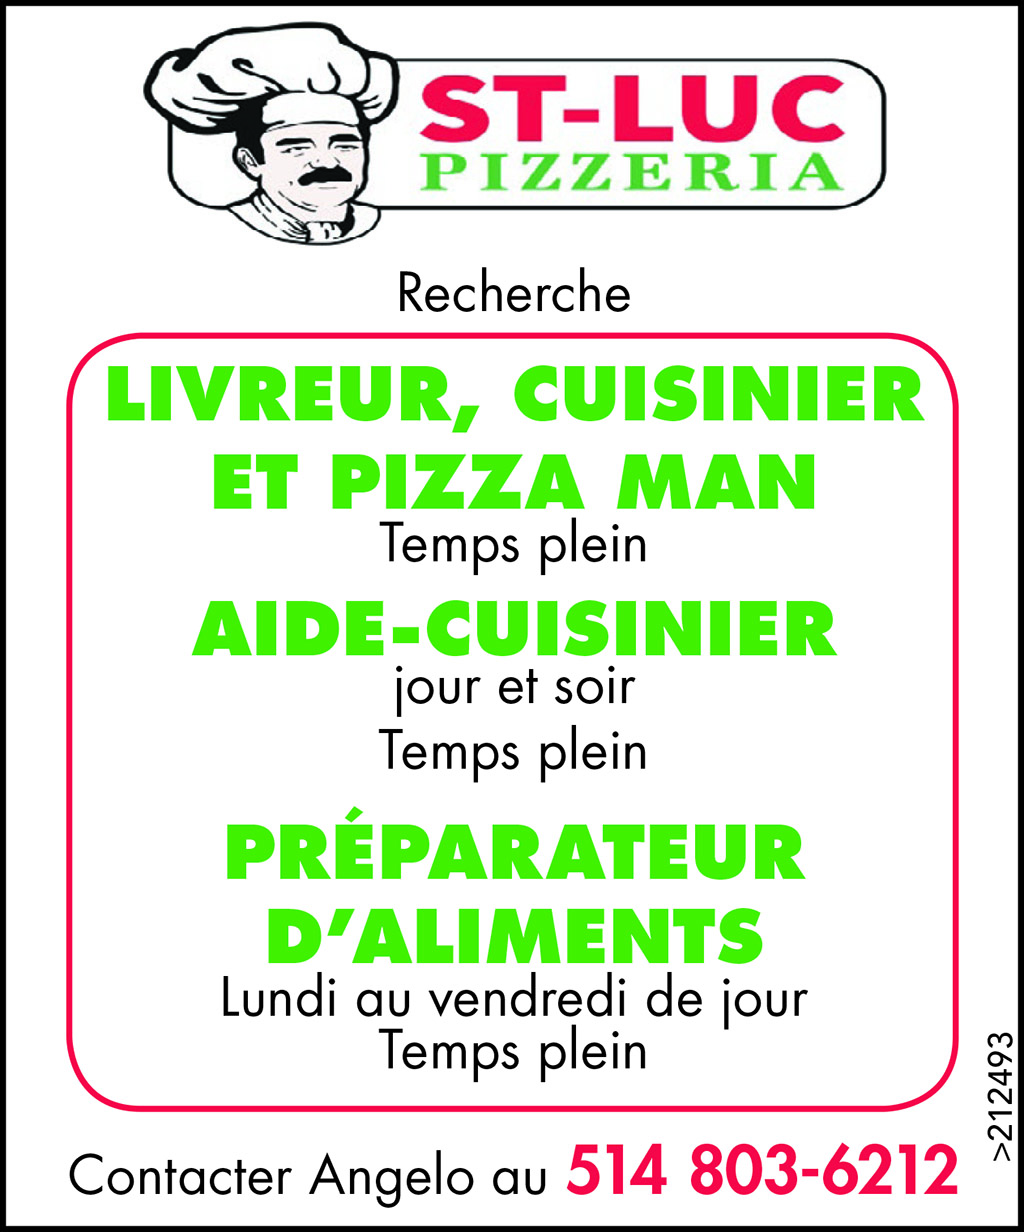 Logo de Livreur, cuisinier, pizza man, aide-cuisiner, préparateur d’aliments